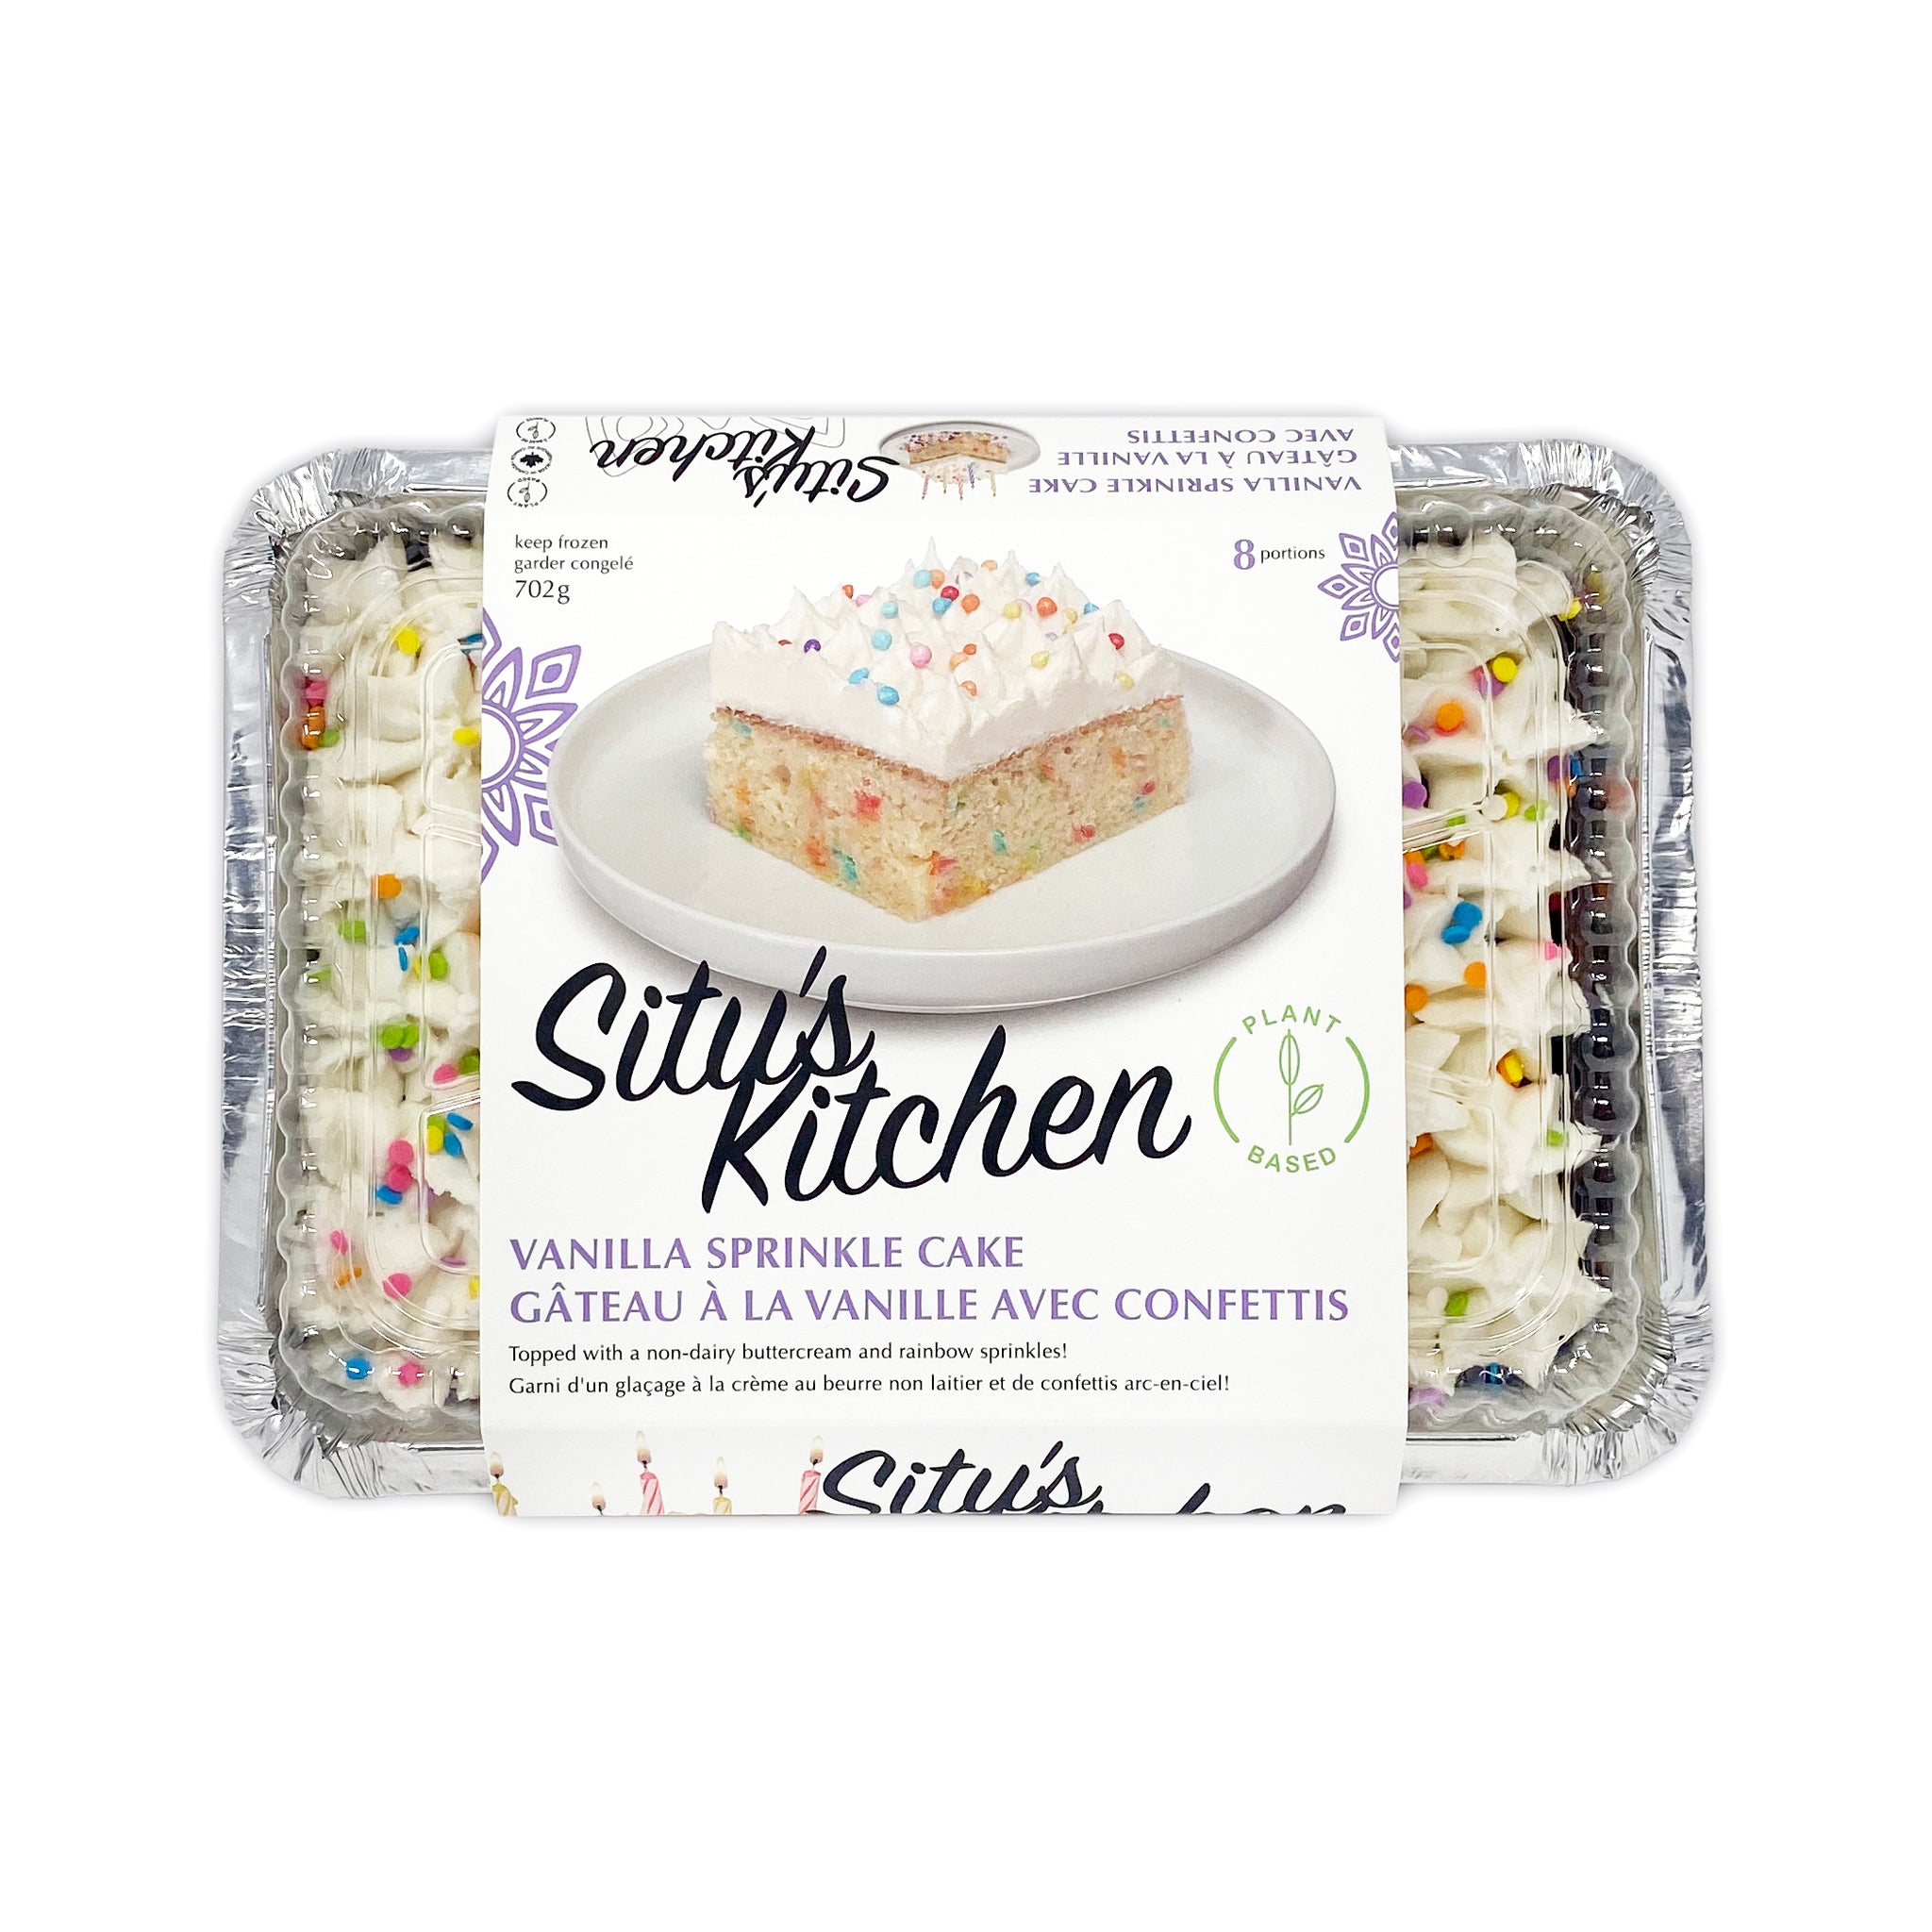 Situ's Kitchen Vanilla Sprinkle Cake